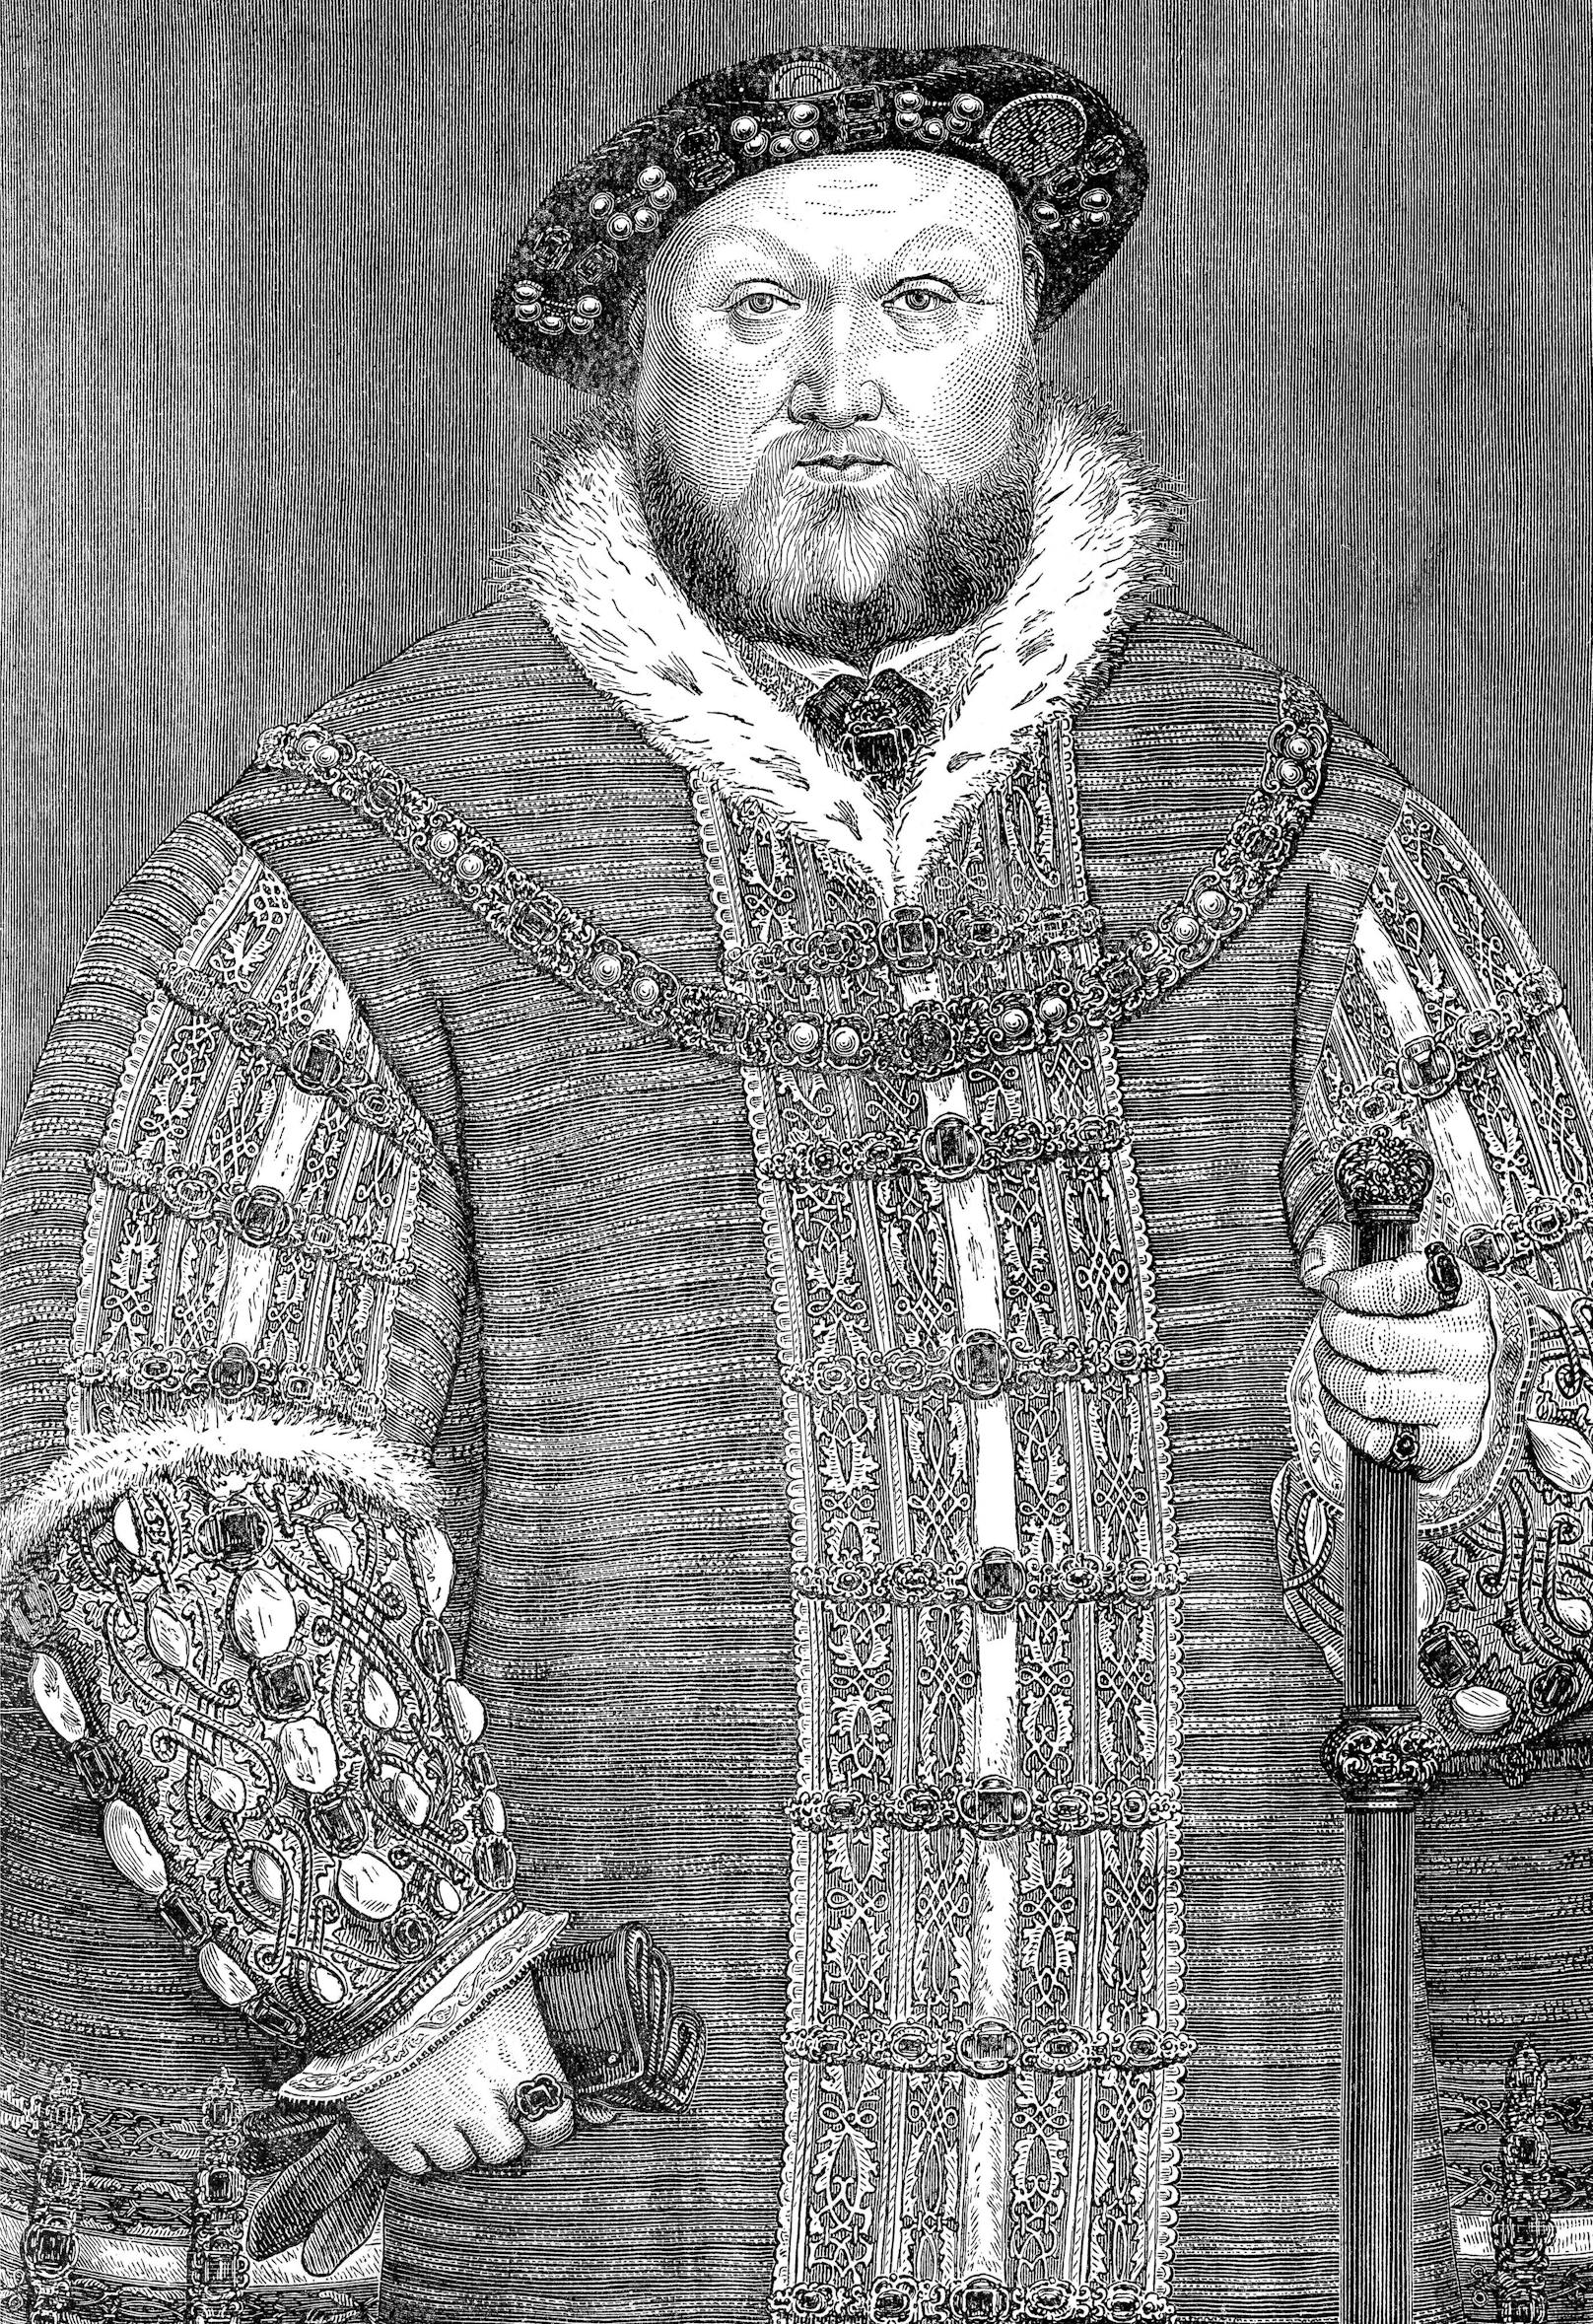 •	<strong>Am Freitag, den 13. Februar 1542</strong>, ließ Heinrich der VIII.  seine fünfte Ehefrau, Katharina Howard, in London köpfen. Naja okay, der gute Mann hatte ja generell einen fable für die Guillotine und das sollte man jetzt nicht dem Datum anlasten. 